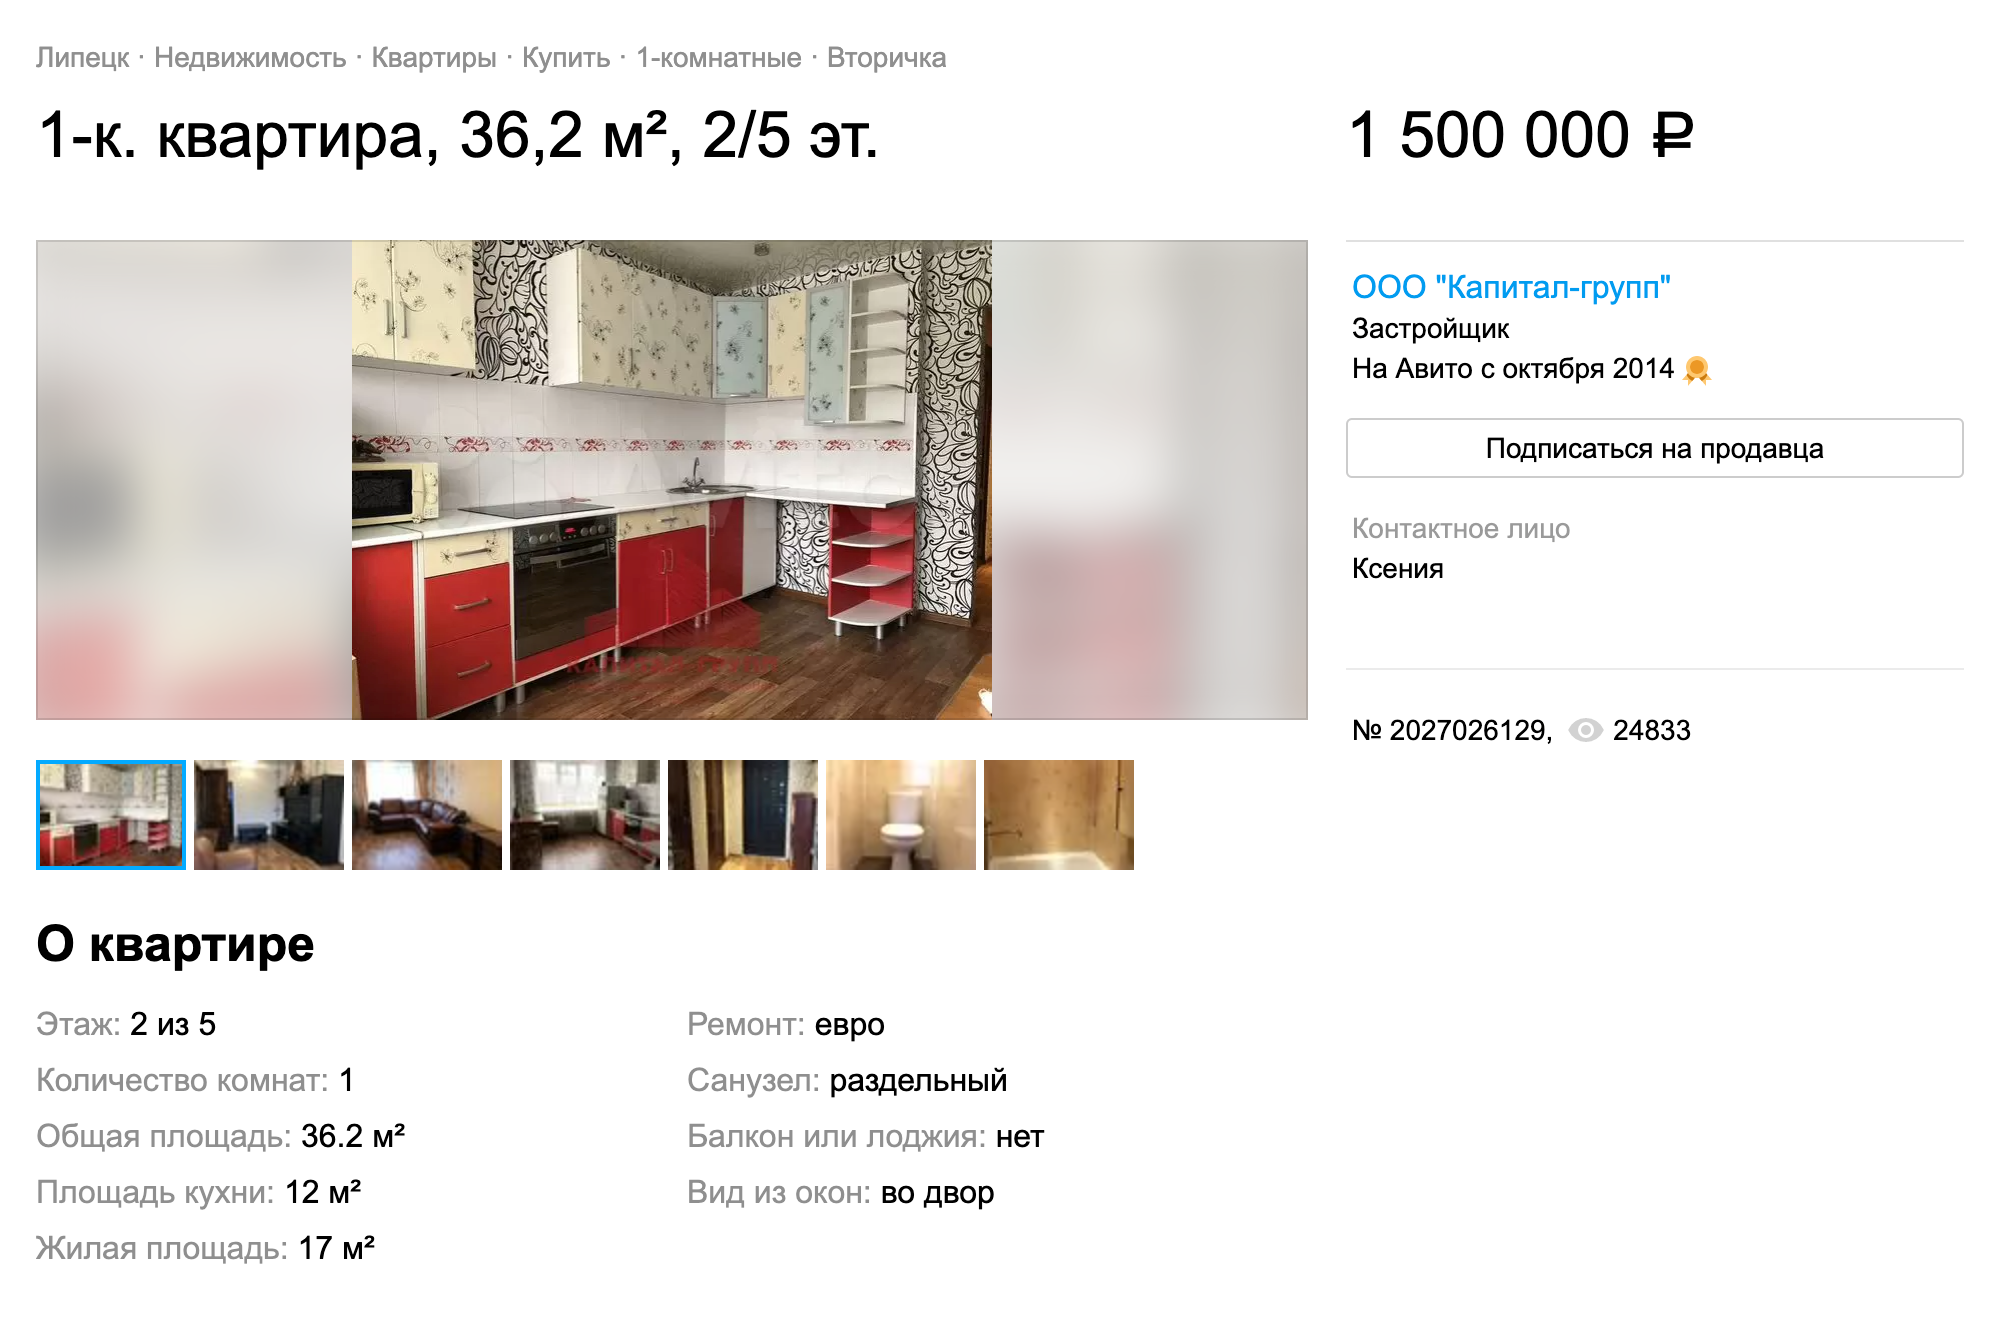 Квартира находится на окраине города — в районе Сокол. Несмотря на это, цена не сильно ниже, чем на жилье в центре